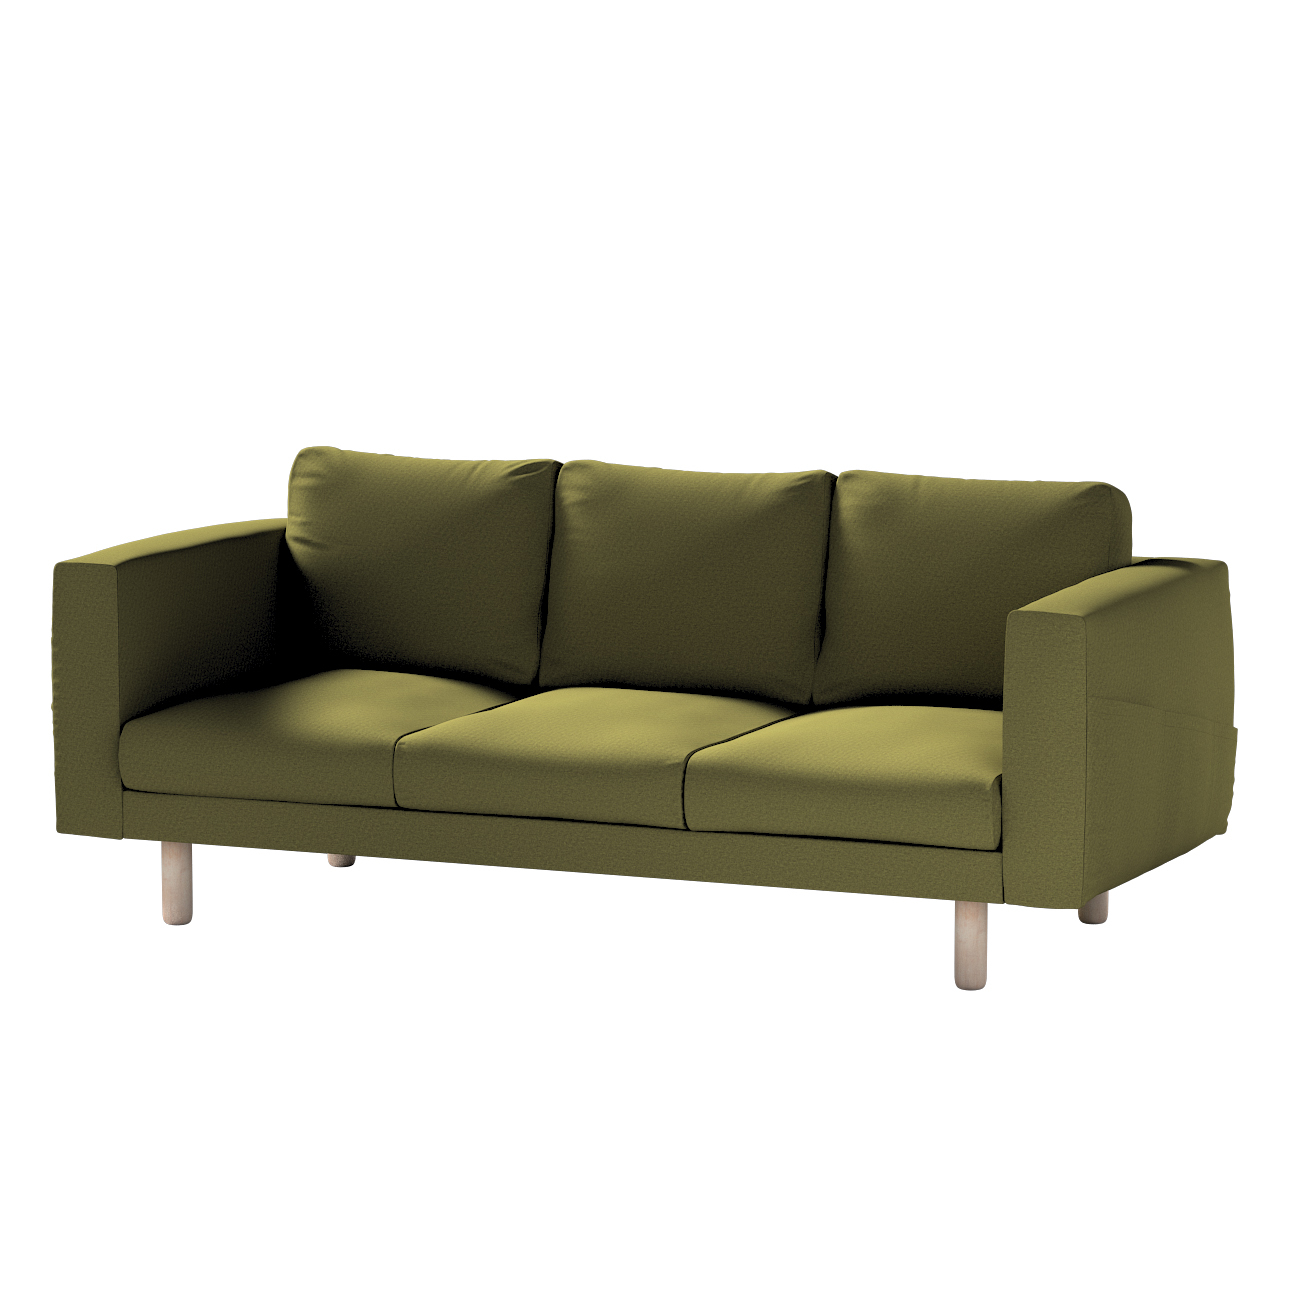 Bezug für Norsborg 3-Sitzer Sofa, olivgrün, Norsborg 3-Sitzer Sofabezug, Et günstig online kaufen